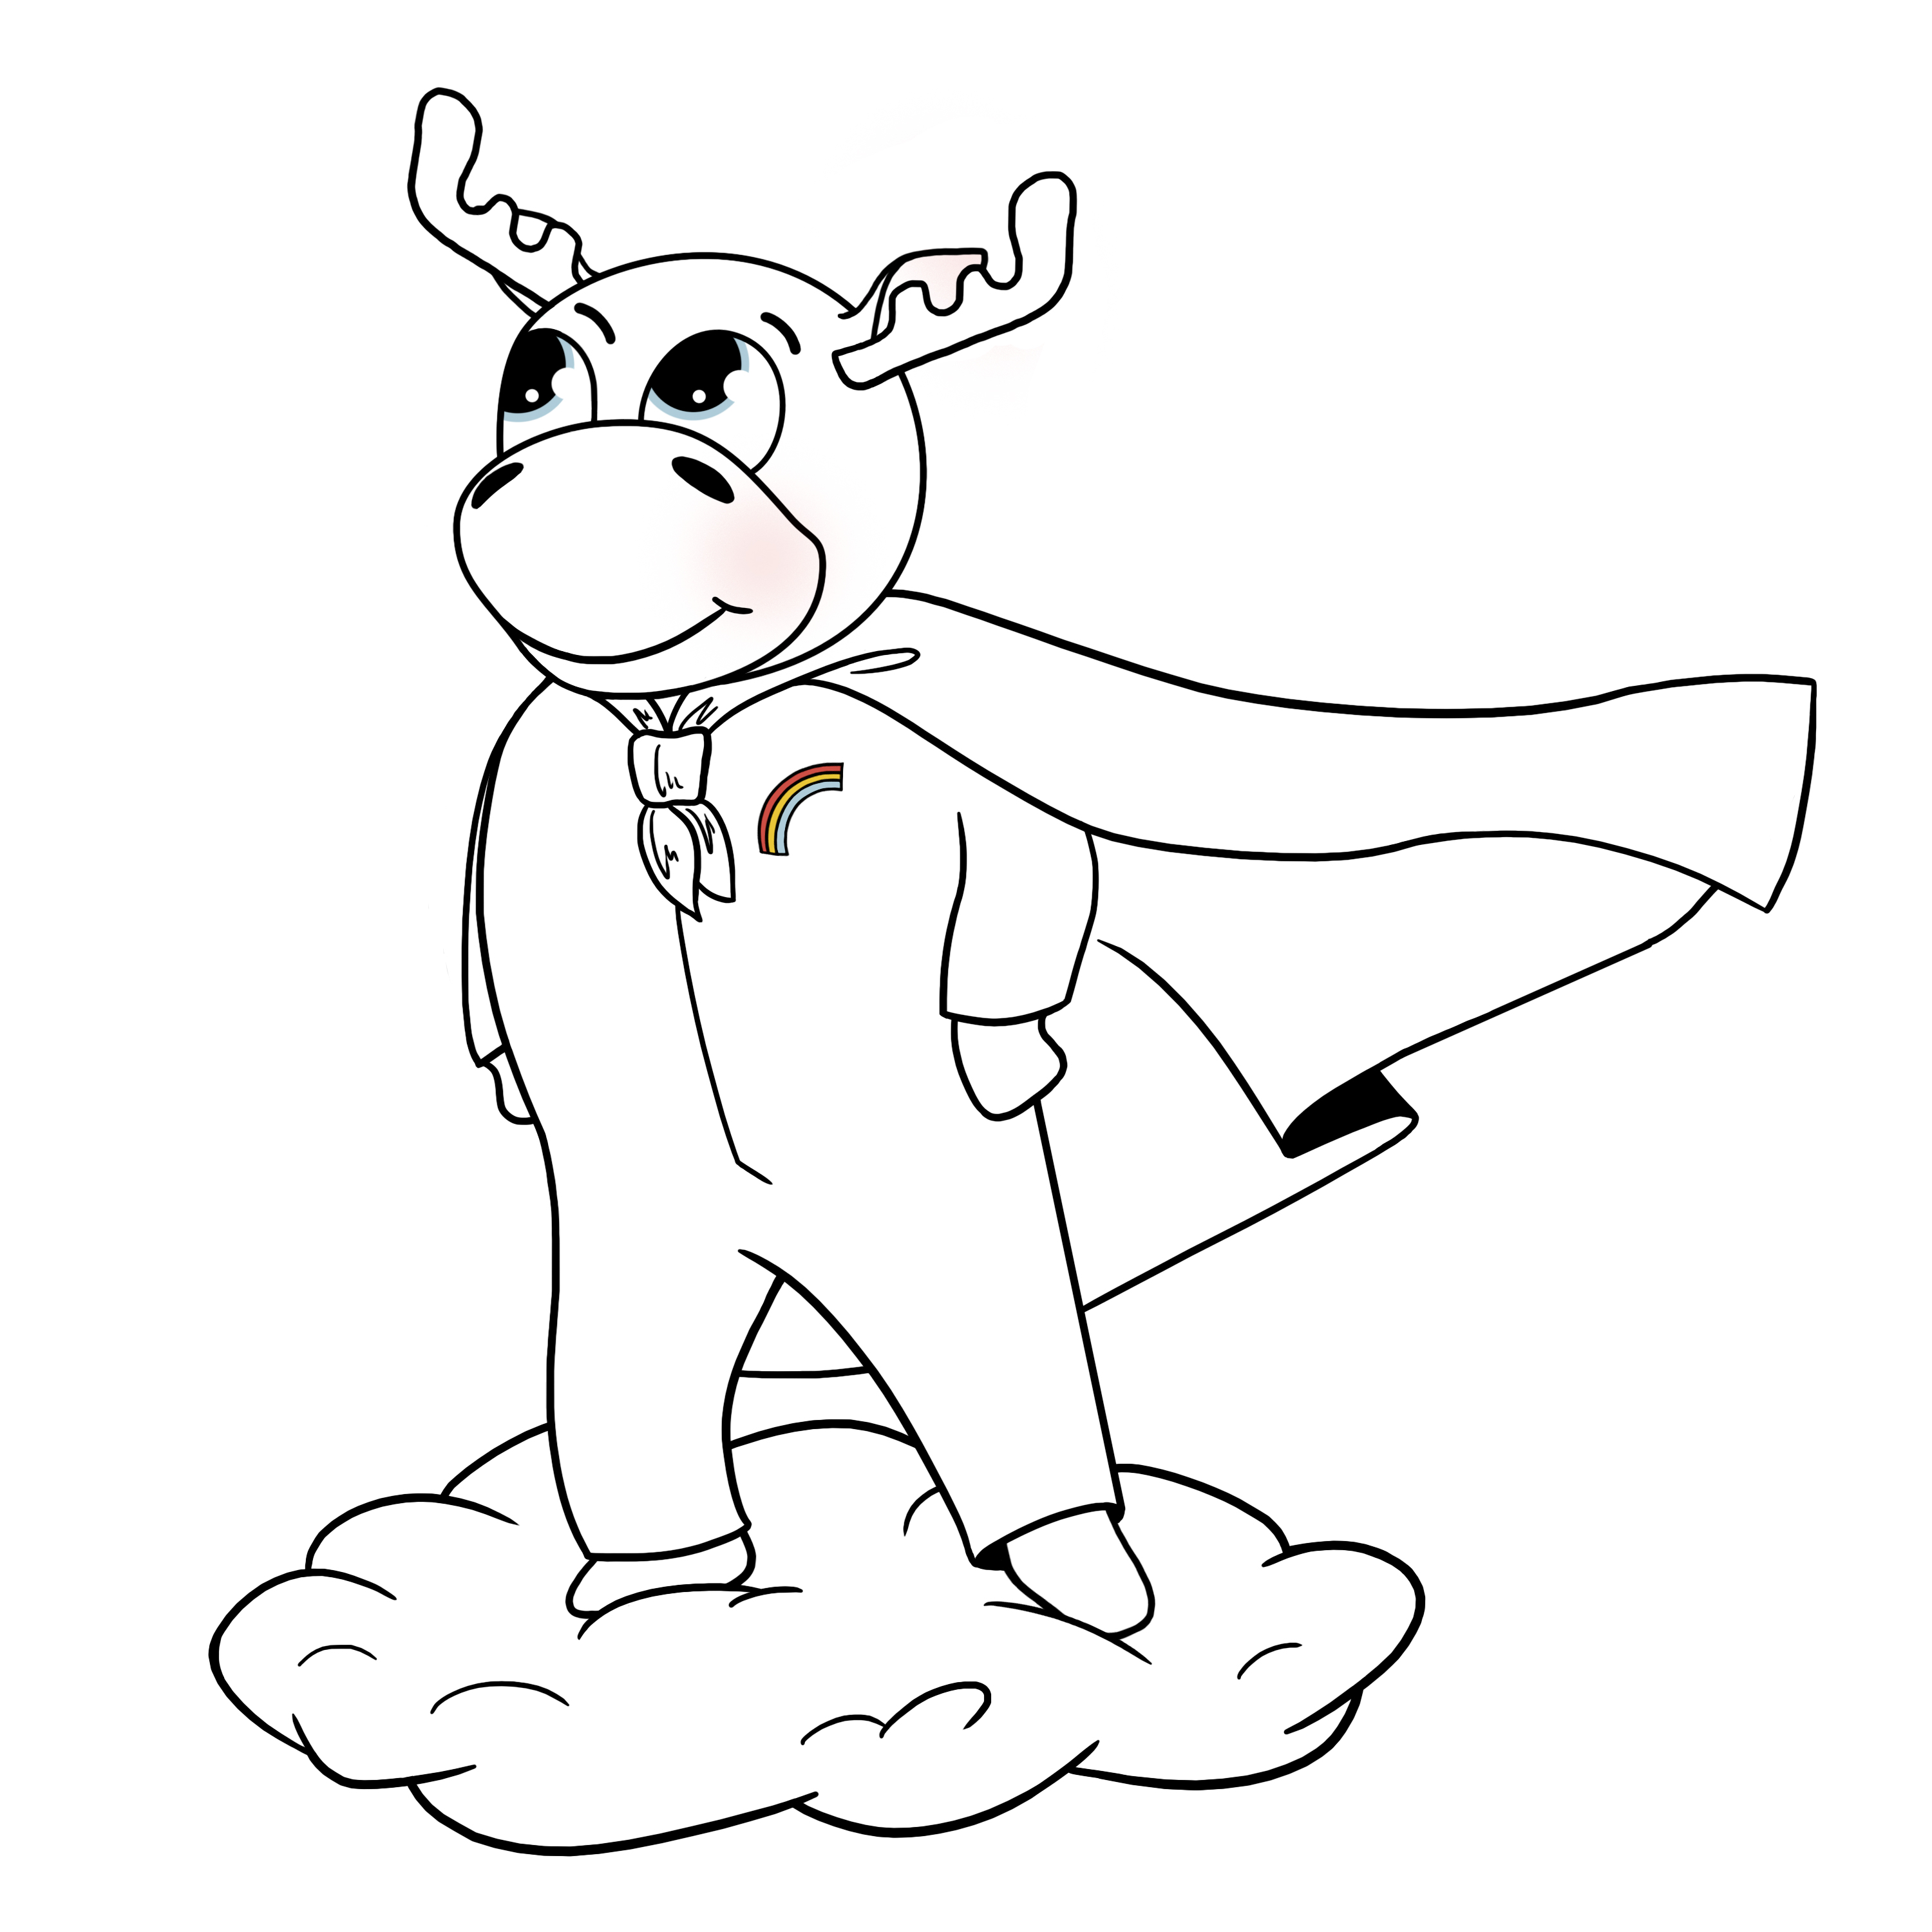 Elk in suit2